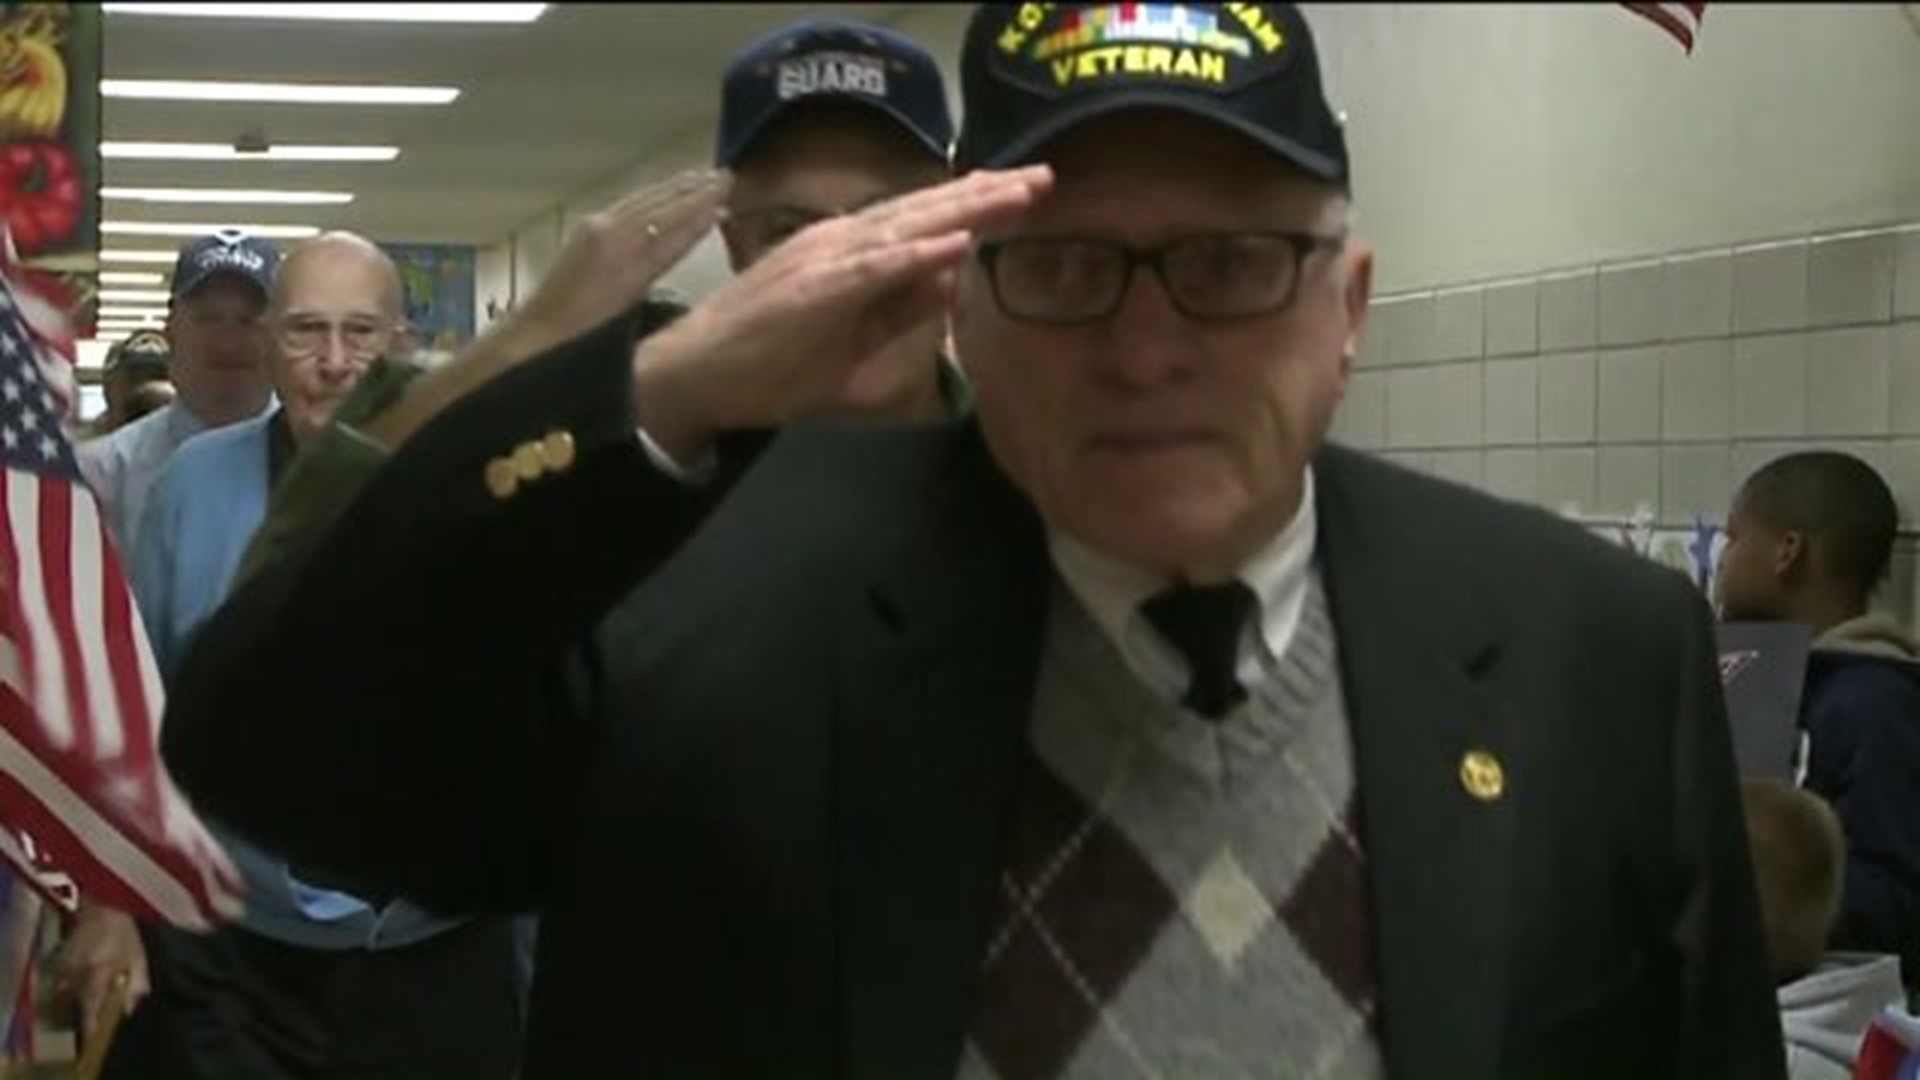 16 Salutes: Veteran Takes Pride in American Flag